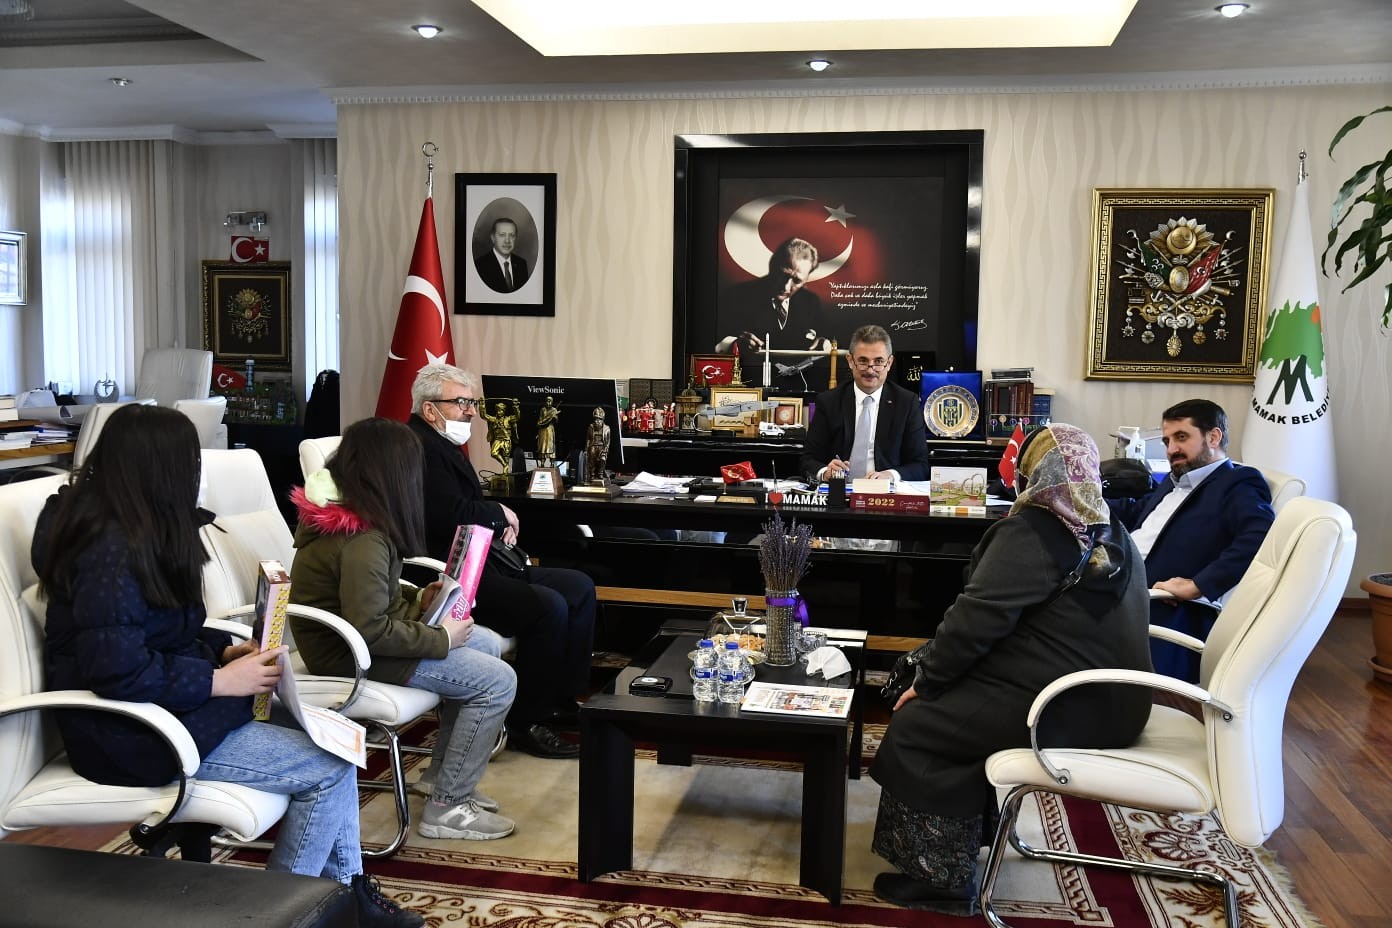 Mamak Belediye Başkanı Köse, vatandaşlarla bir araya geldi #ankara